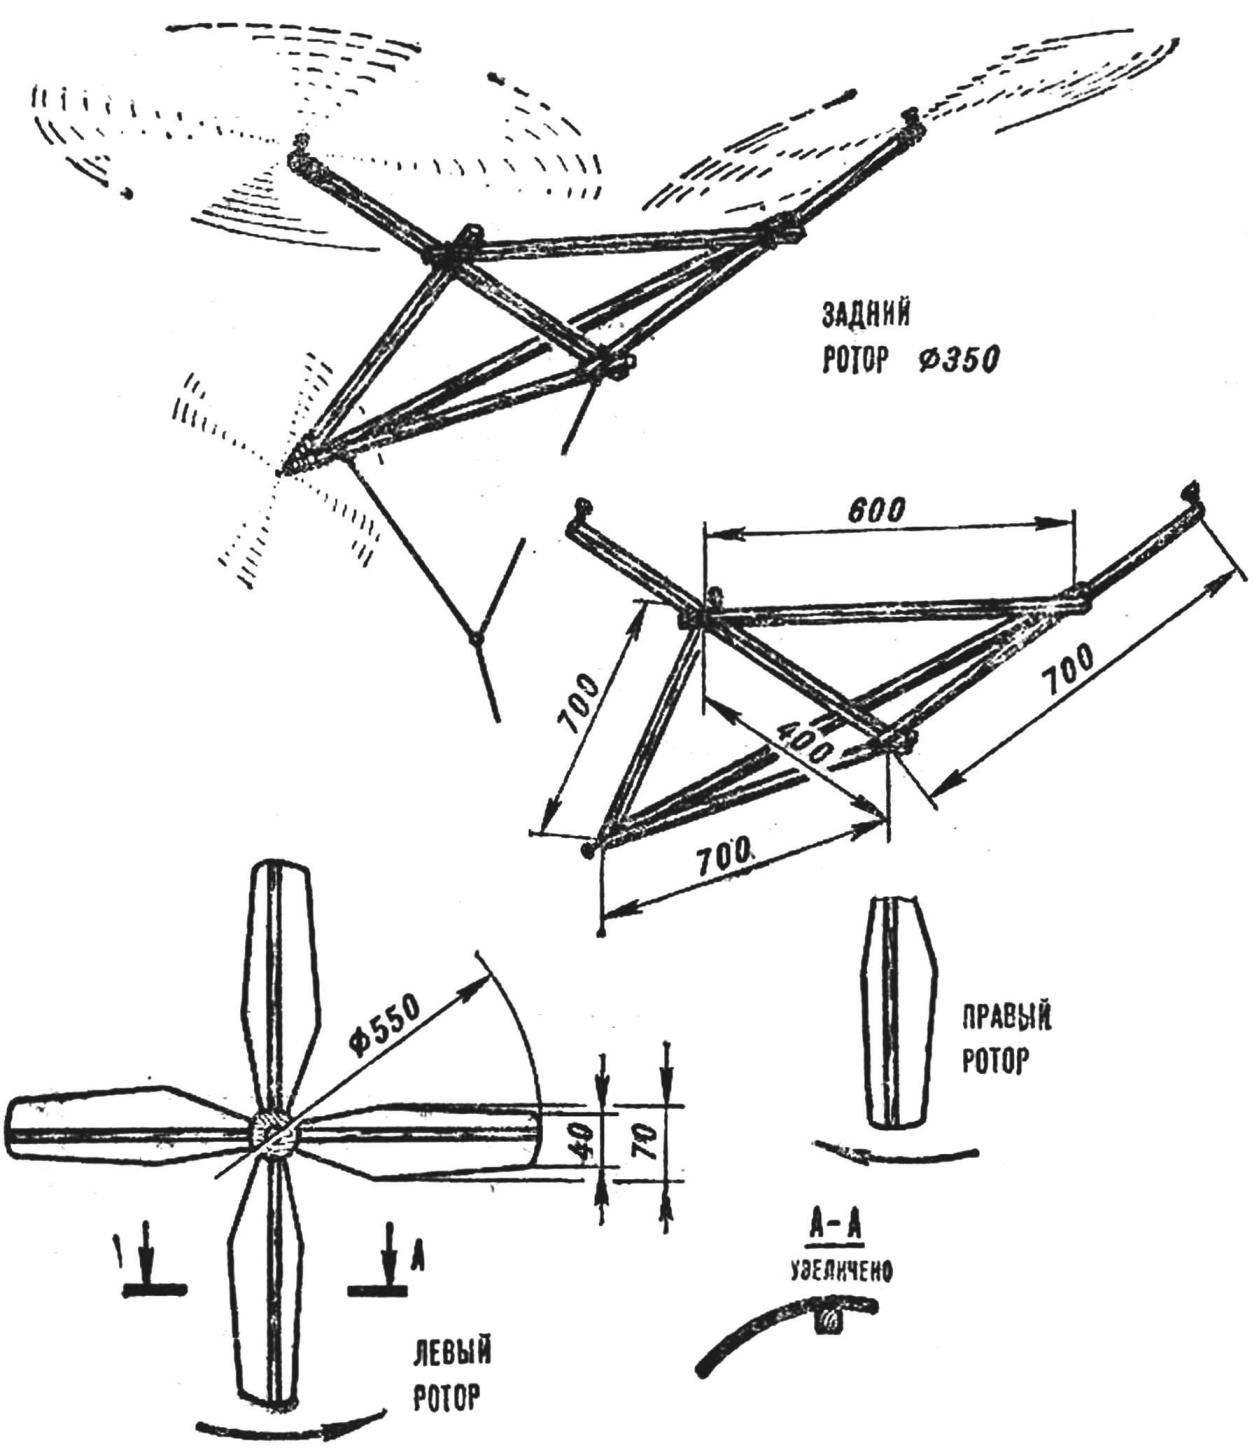 Рис. 3. Змей вертолетной многороторной схемы и его детали.